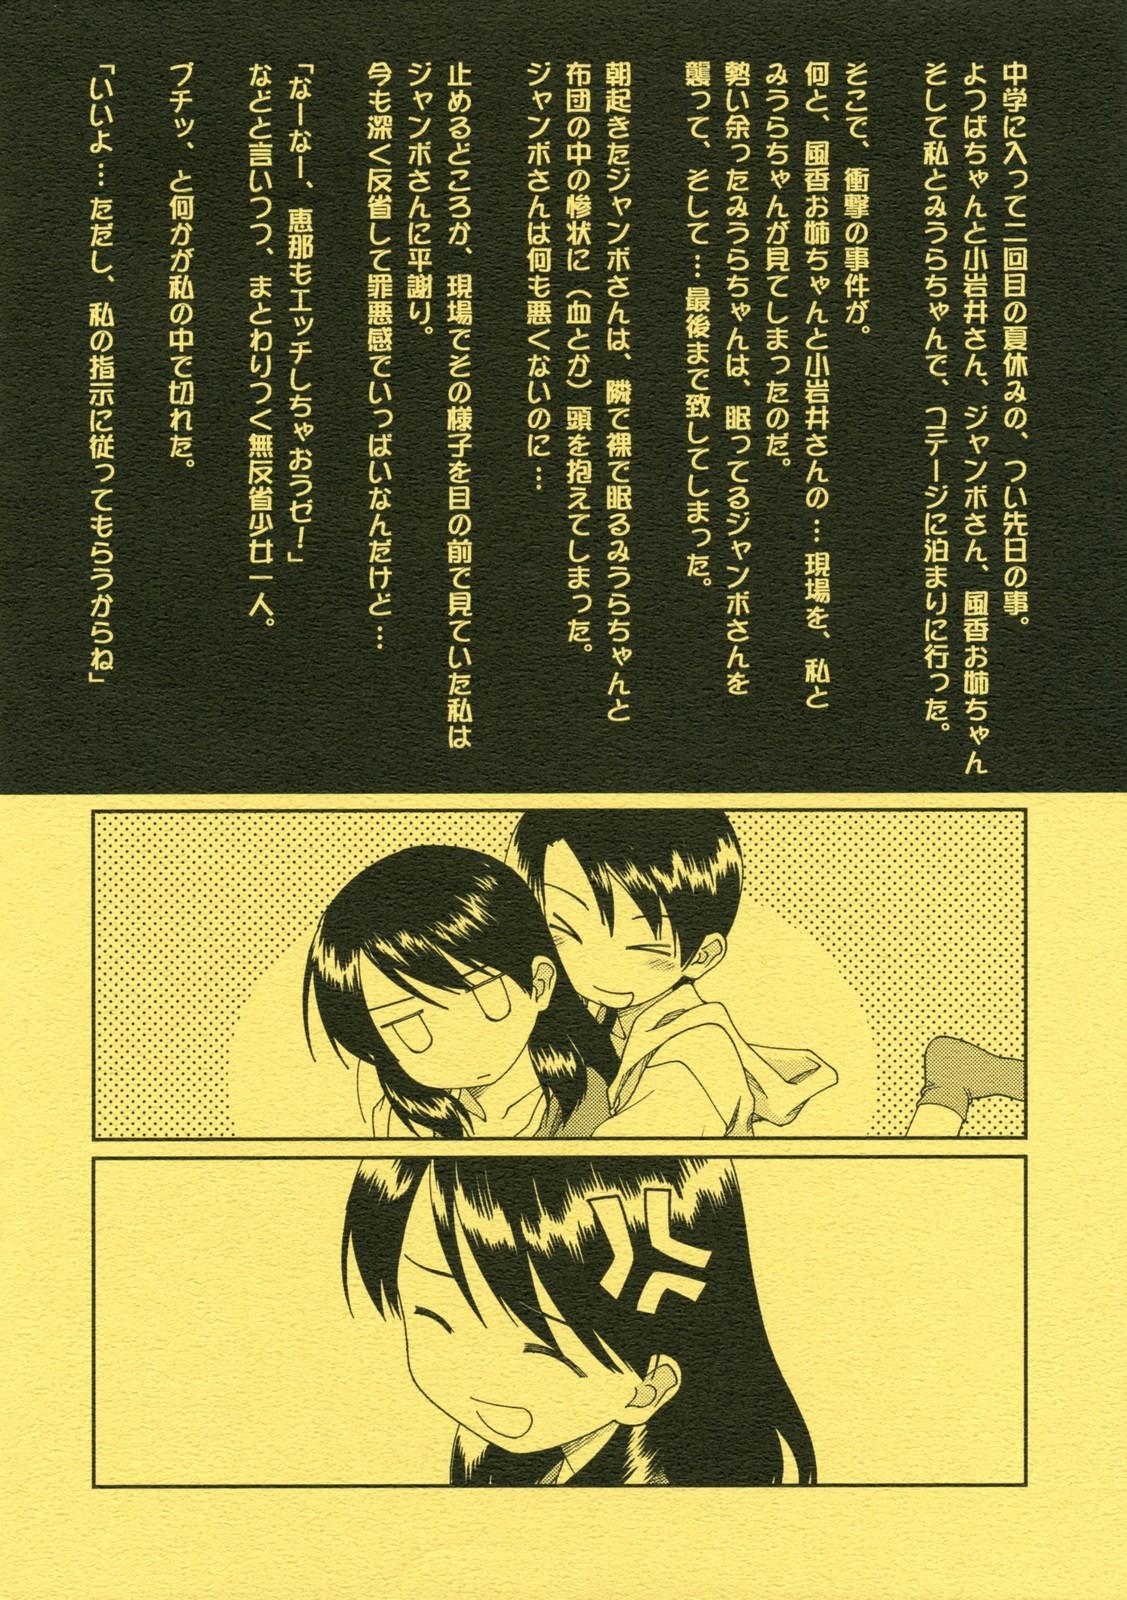 Dildo Miurato - Yotsubato Natural - Page 2